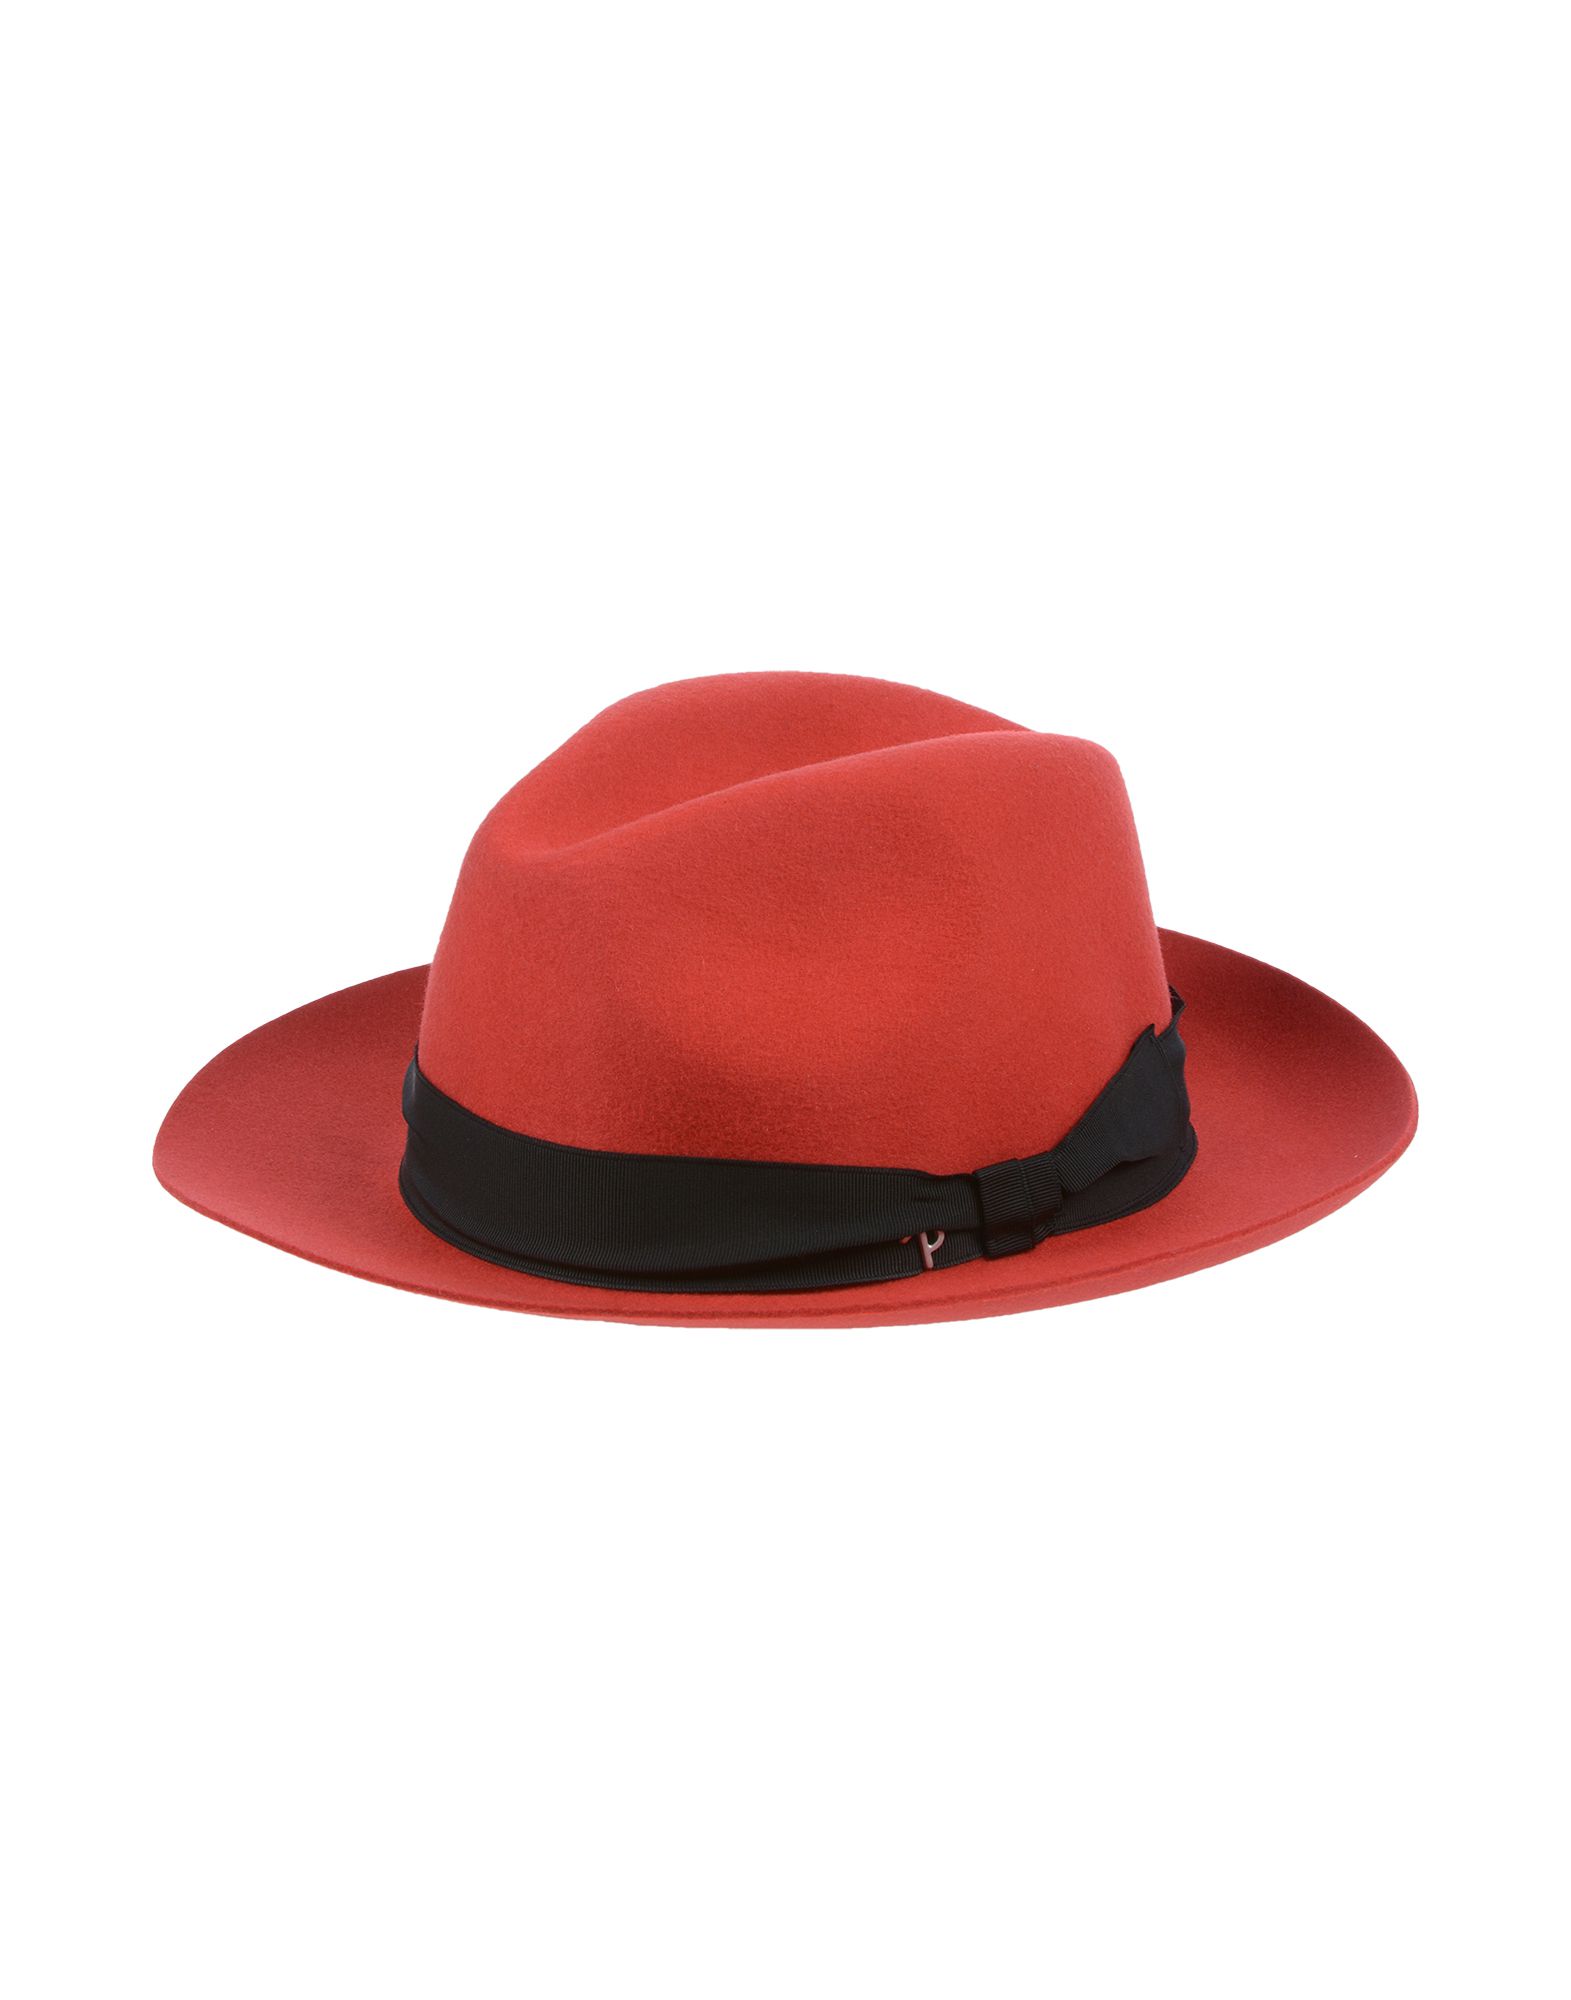 《送料無料》PANIZZA メンズ 帽子 レッド 57 ウール 100%